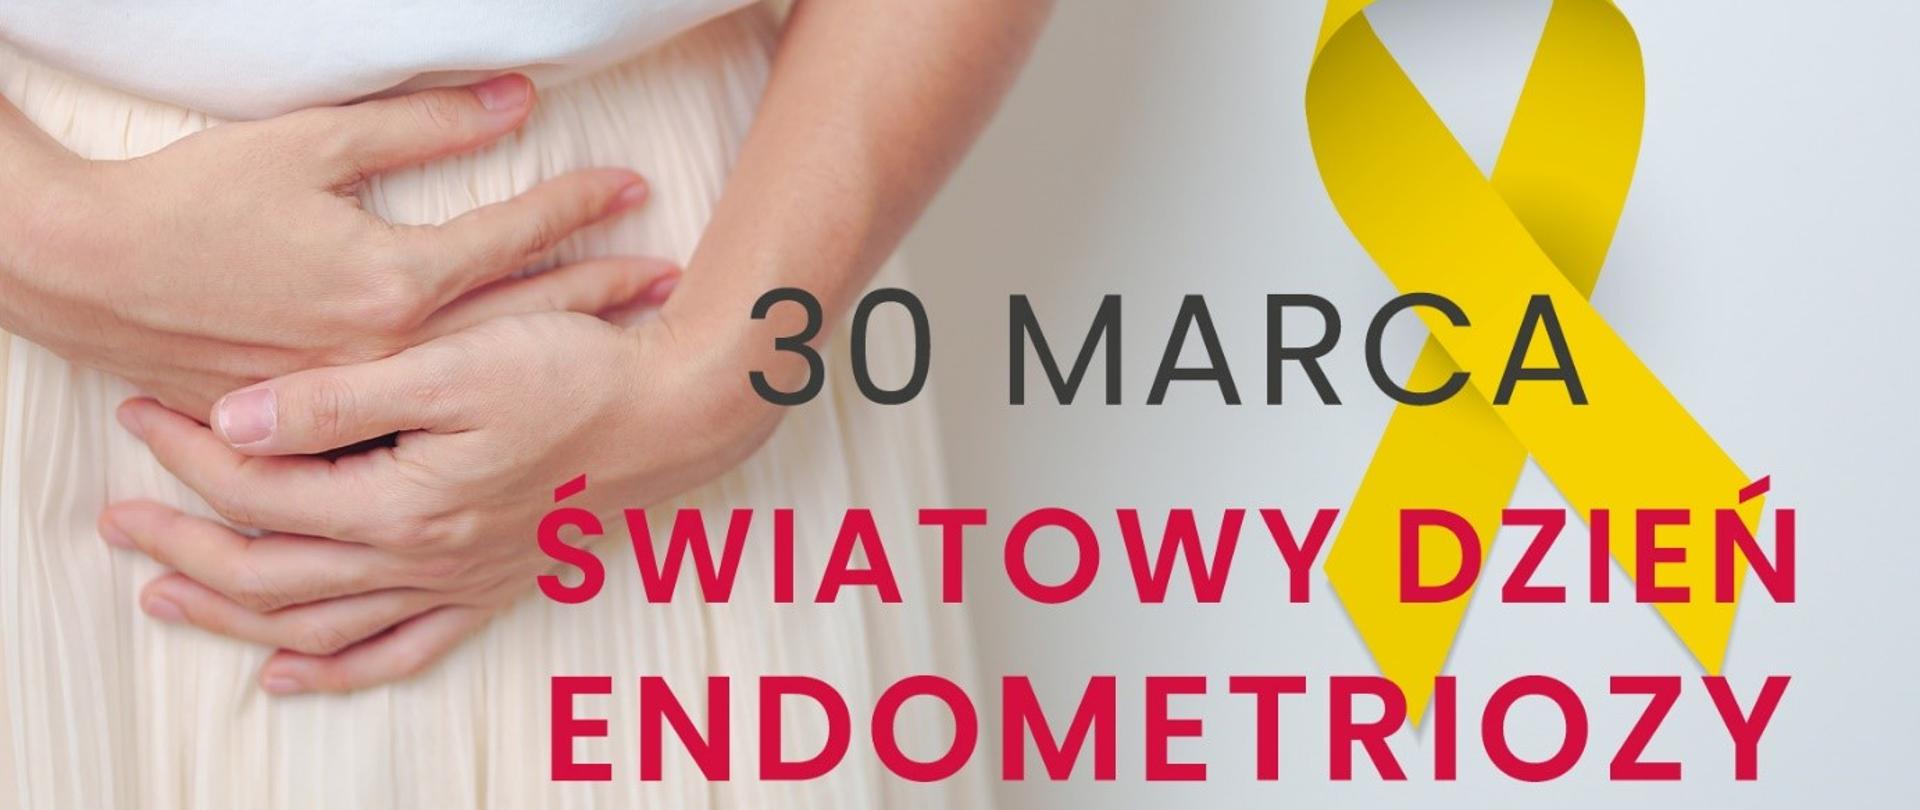 Zdjęcie stojącej osoby na białym tle, która trzyma się rękoma w okolicy brzucha. Na środku umieszczono napis "30 marca Światowy Dzień Endometriozy" oraz żółtą wstęgę. W prawym górnym rogu umieszczono logo Ministerstwa Zdrowia.